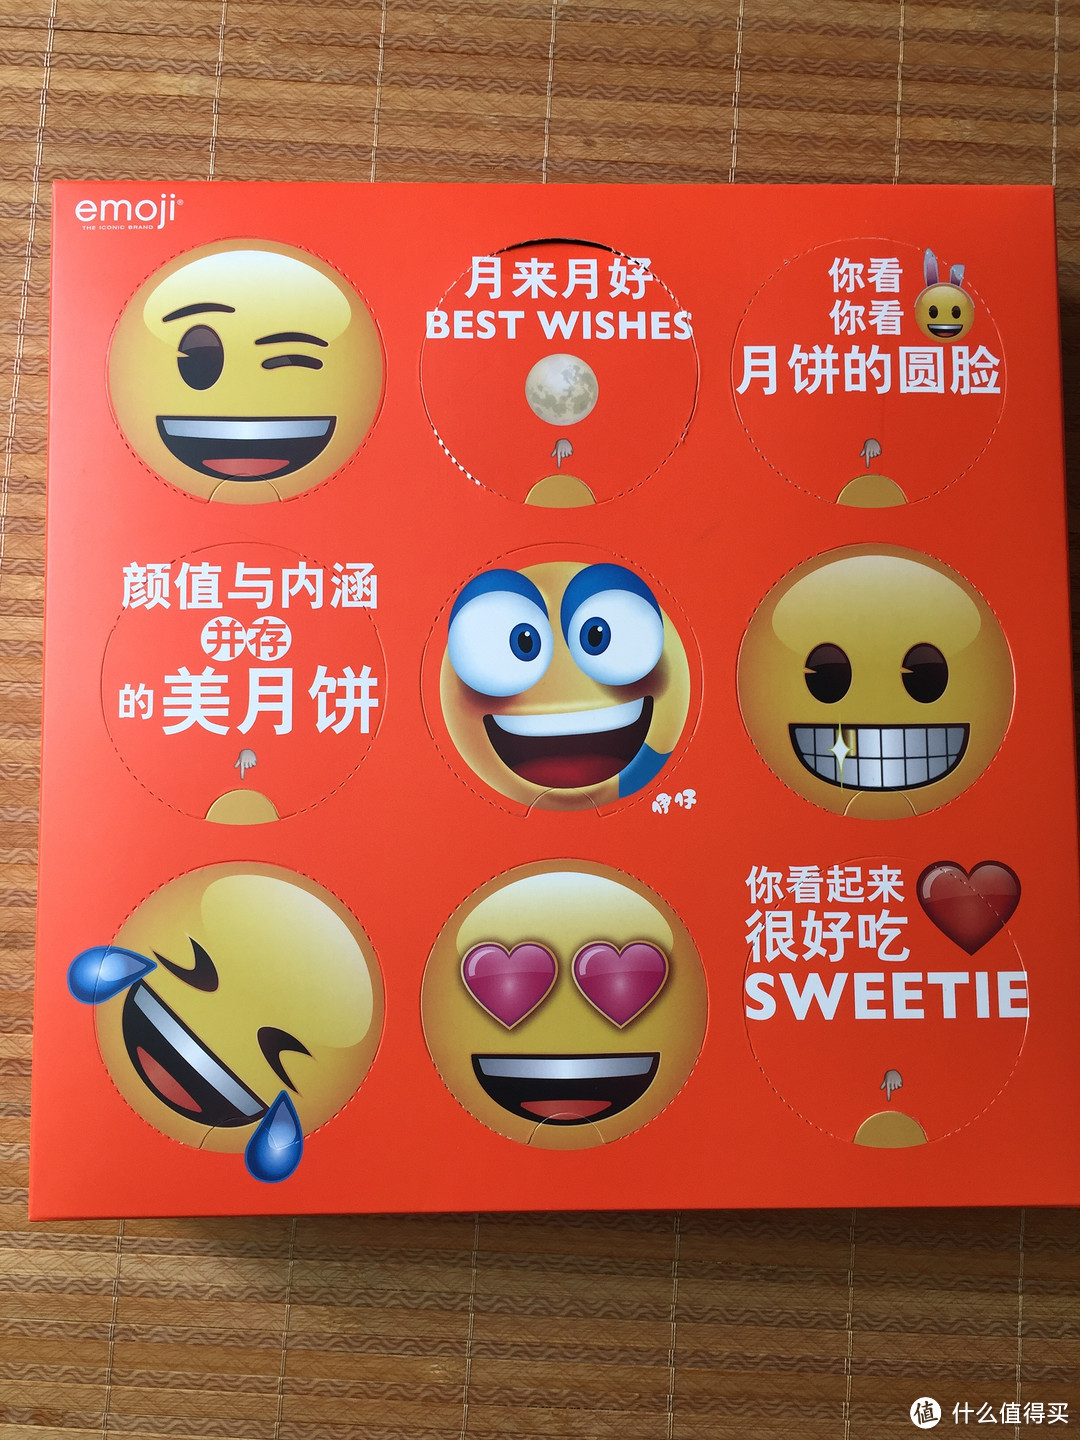 来伊份 2017年中秋emoji九宫格礼盒d测评报告